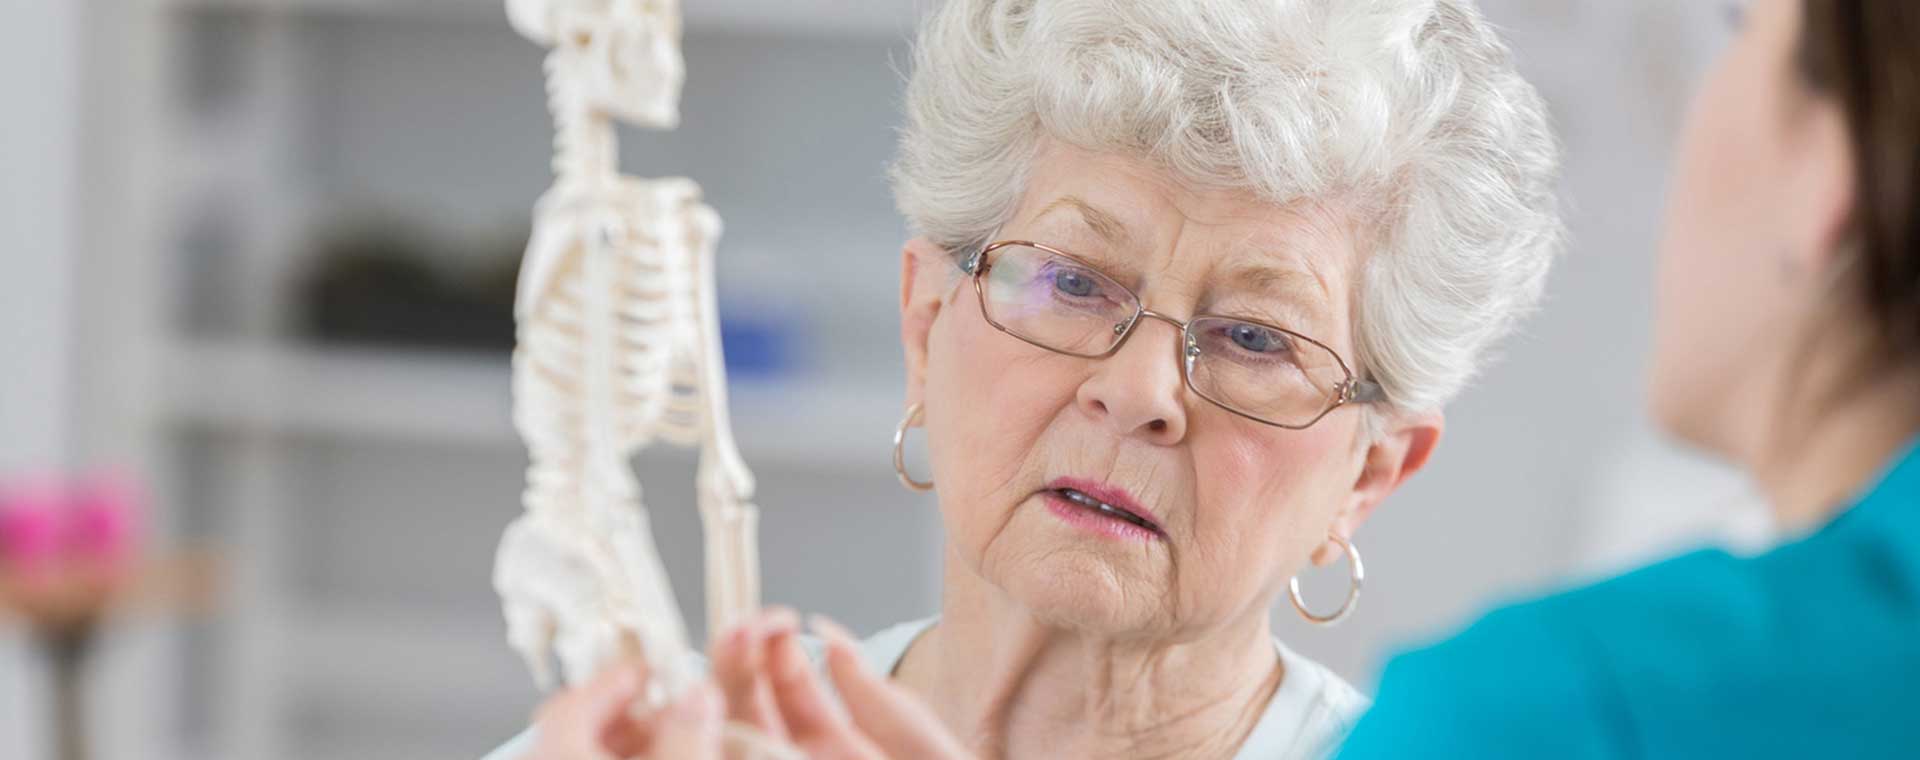 Ostéoporose : une nouvelle approche thérapeutique